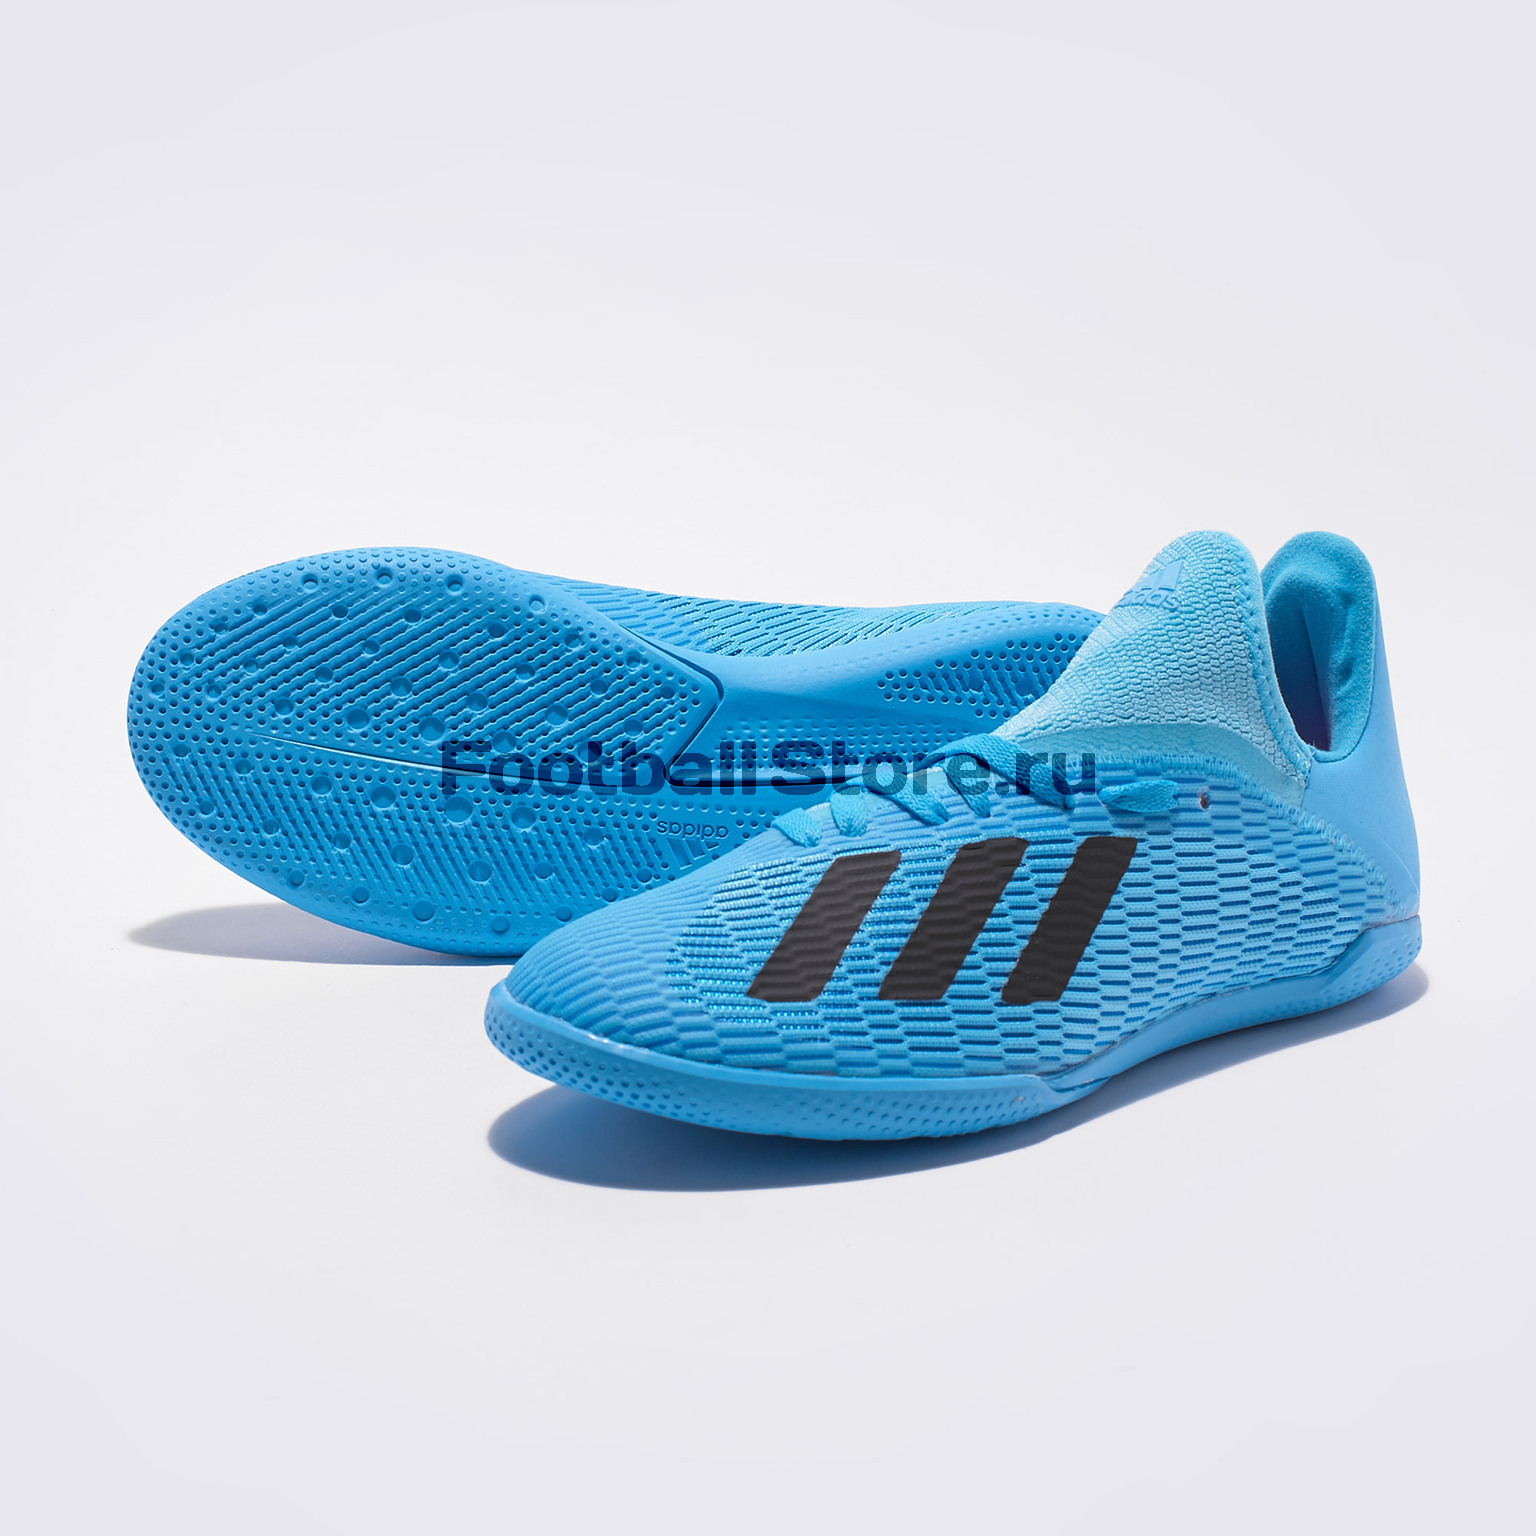 Купить детские Adidas X 19.3 IN – в футбольном магазине footballstore, цена, фото